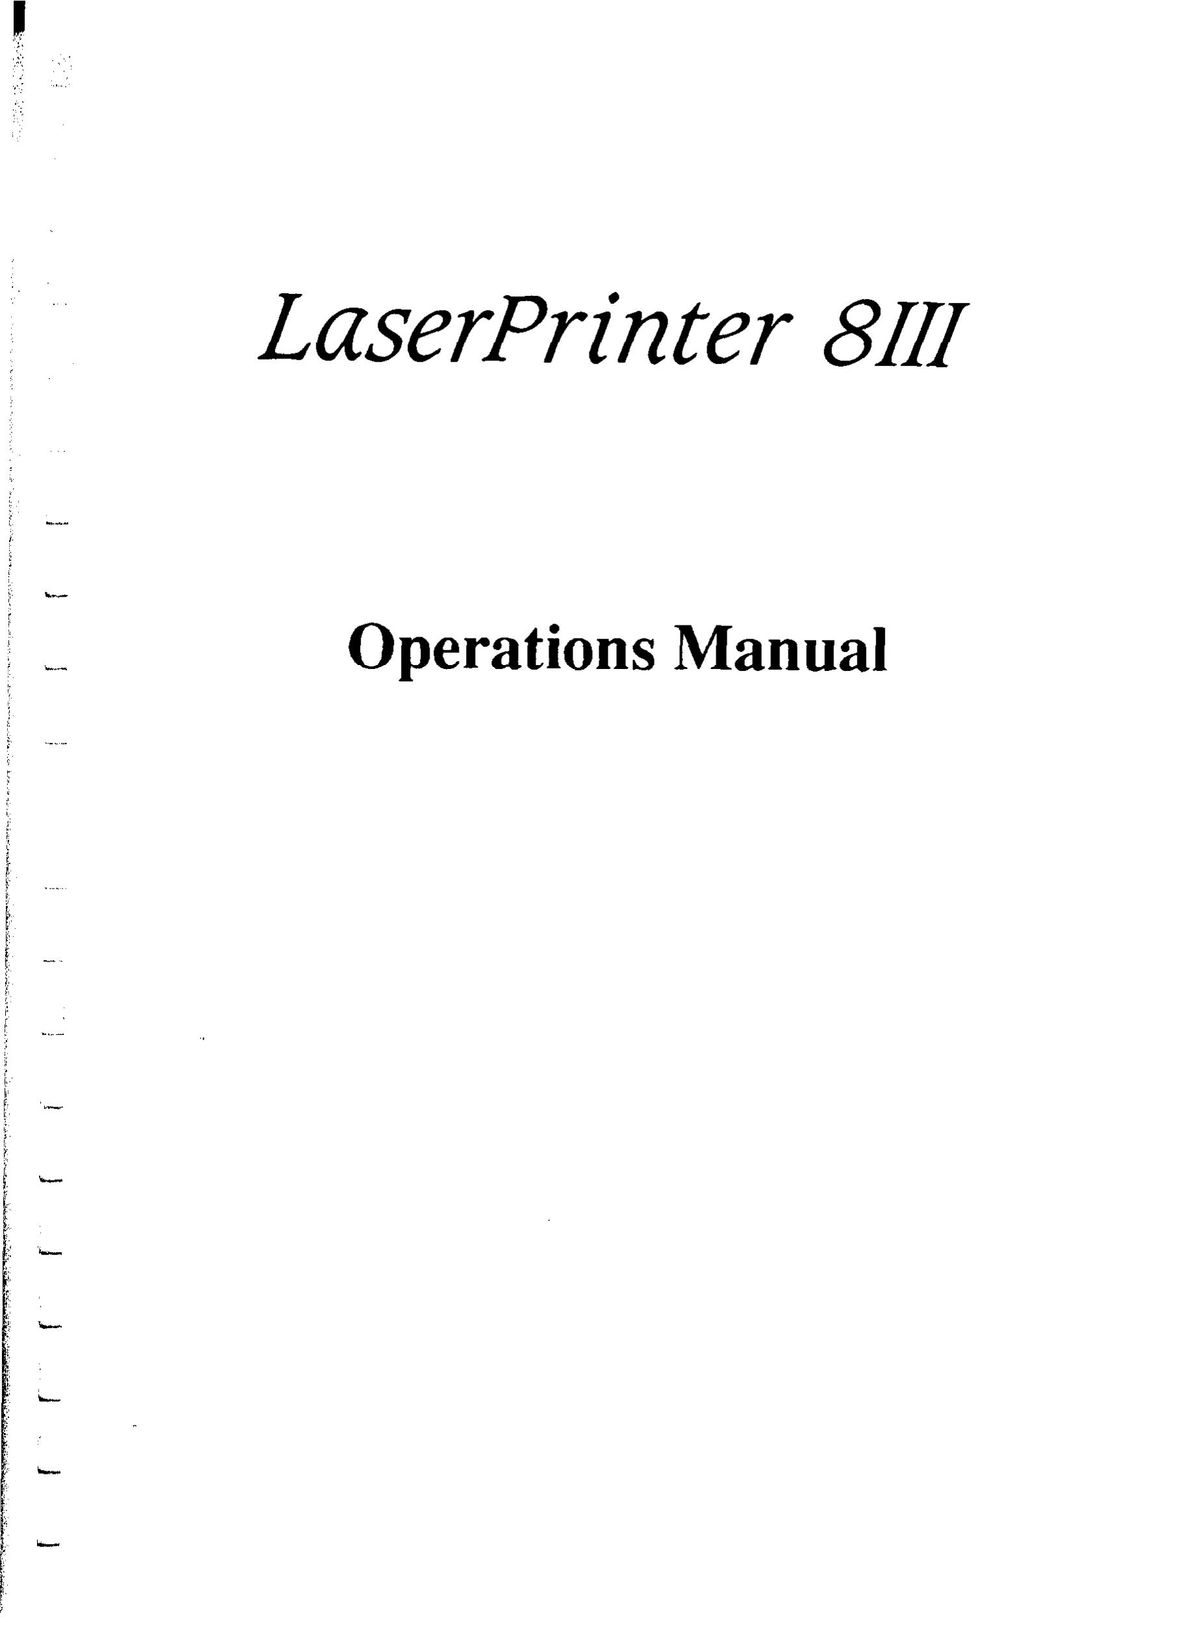 Star Micronics 8III Printer User Manual